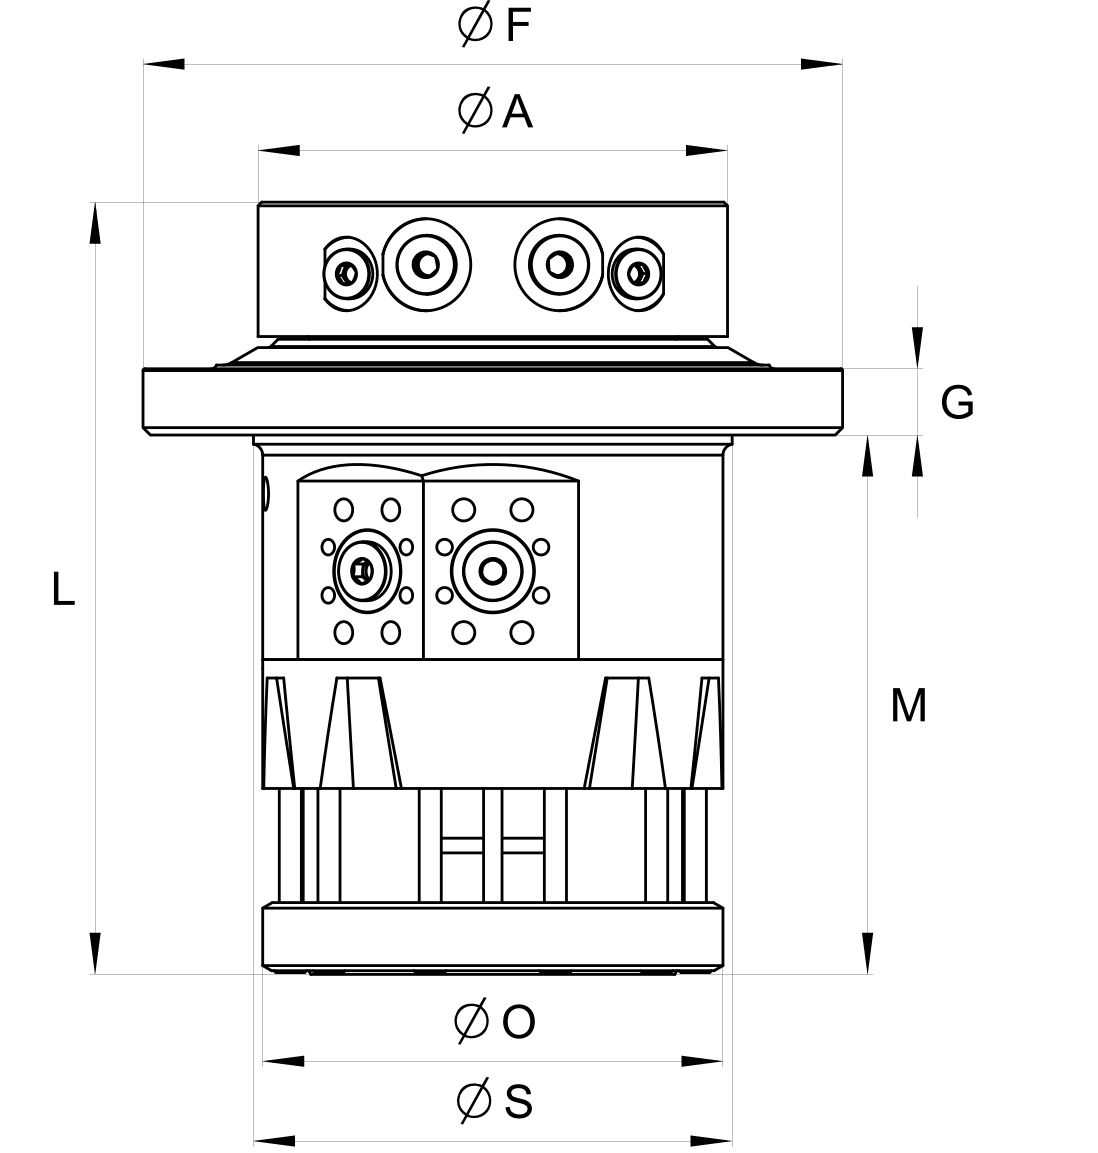 indexator-einbaurotator-rotator-für-polypgreifer-rotator-recyclingeinsatz-rotator-recycling-rotator-materialumschlag-hydraulischer-rotator-für-schrottgreifer-hydraulischer-rotator-für-mehrschalengreifer-hydraulischer-drehkop-für-mehrschalengreifer-hydraulischer-drehmotor-für-mehrschalengreifer